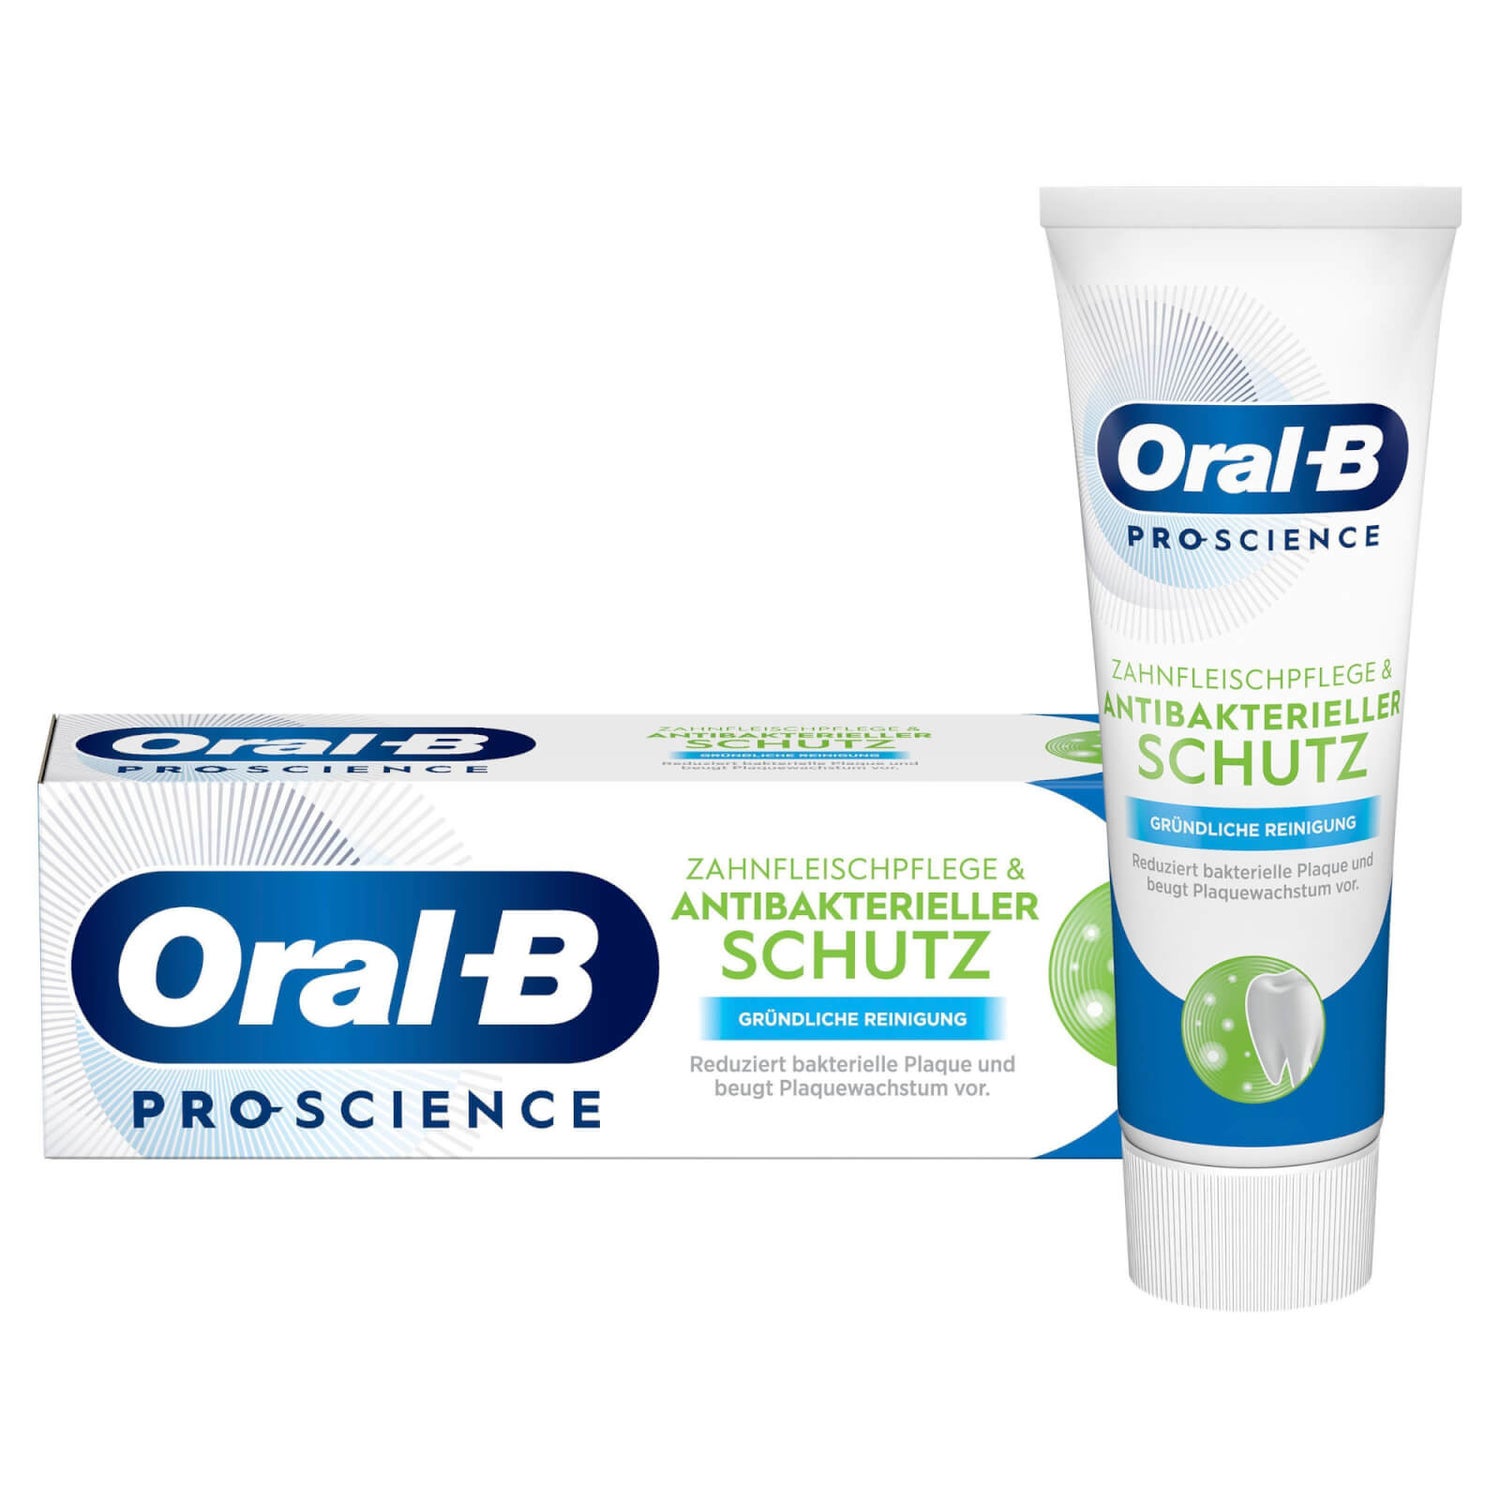 Oral-B PRO-SCIENCE Antibakterieller Schutz & Zahnfleischpflege Gründliche Reinigung 75ml